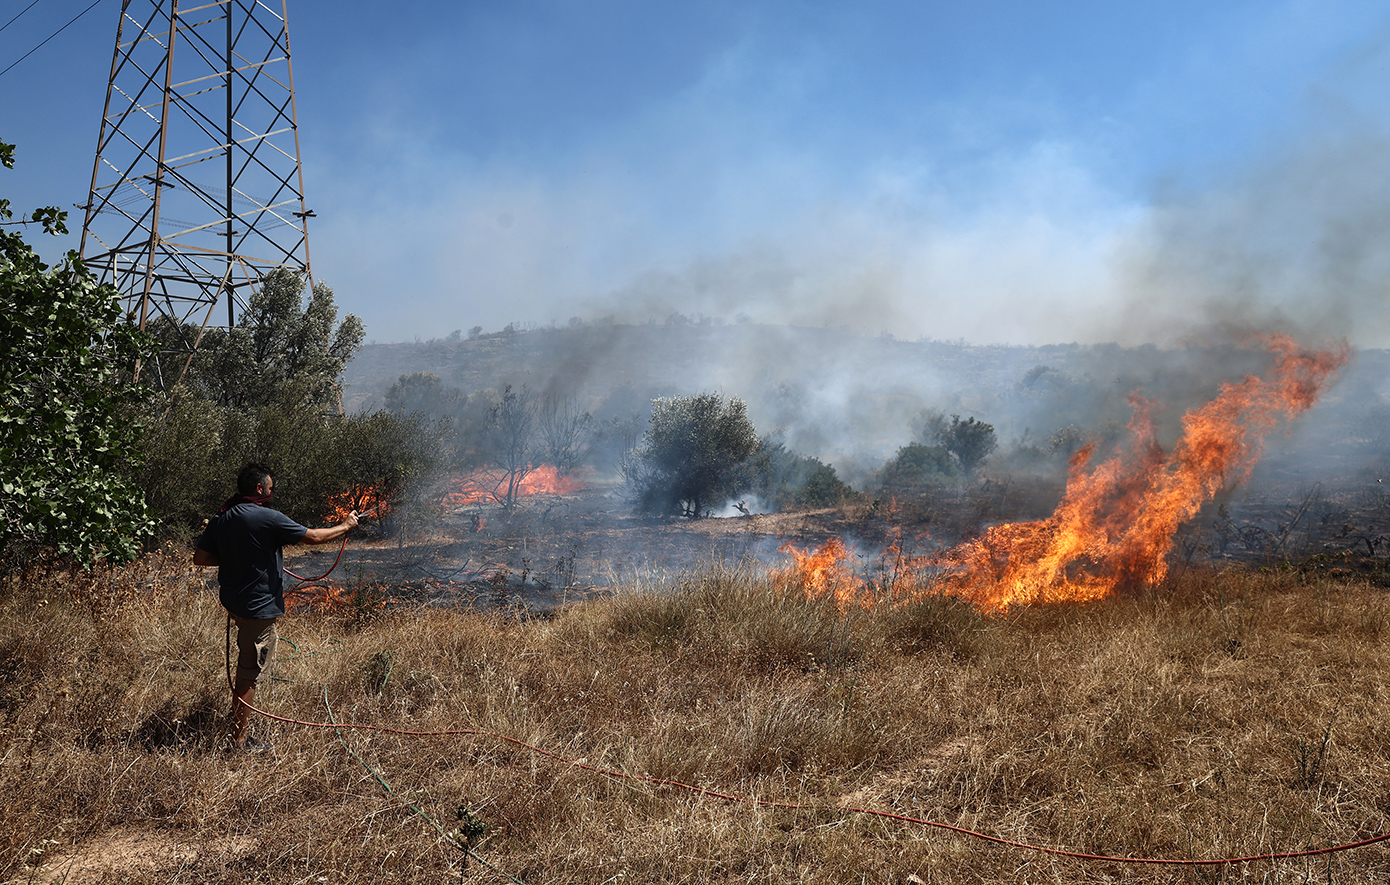 Πυροσβεστική: 27 αγροτοδασικές πυρκαγιές σε όλη τη χώρα το τελευταίο εικοσιτετράωρο